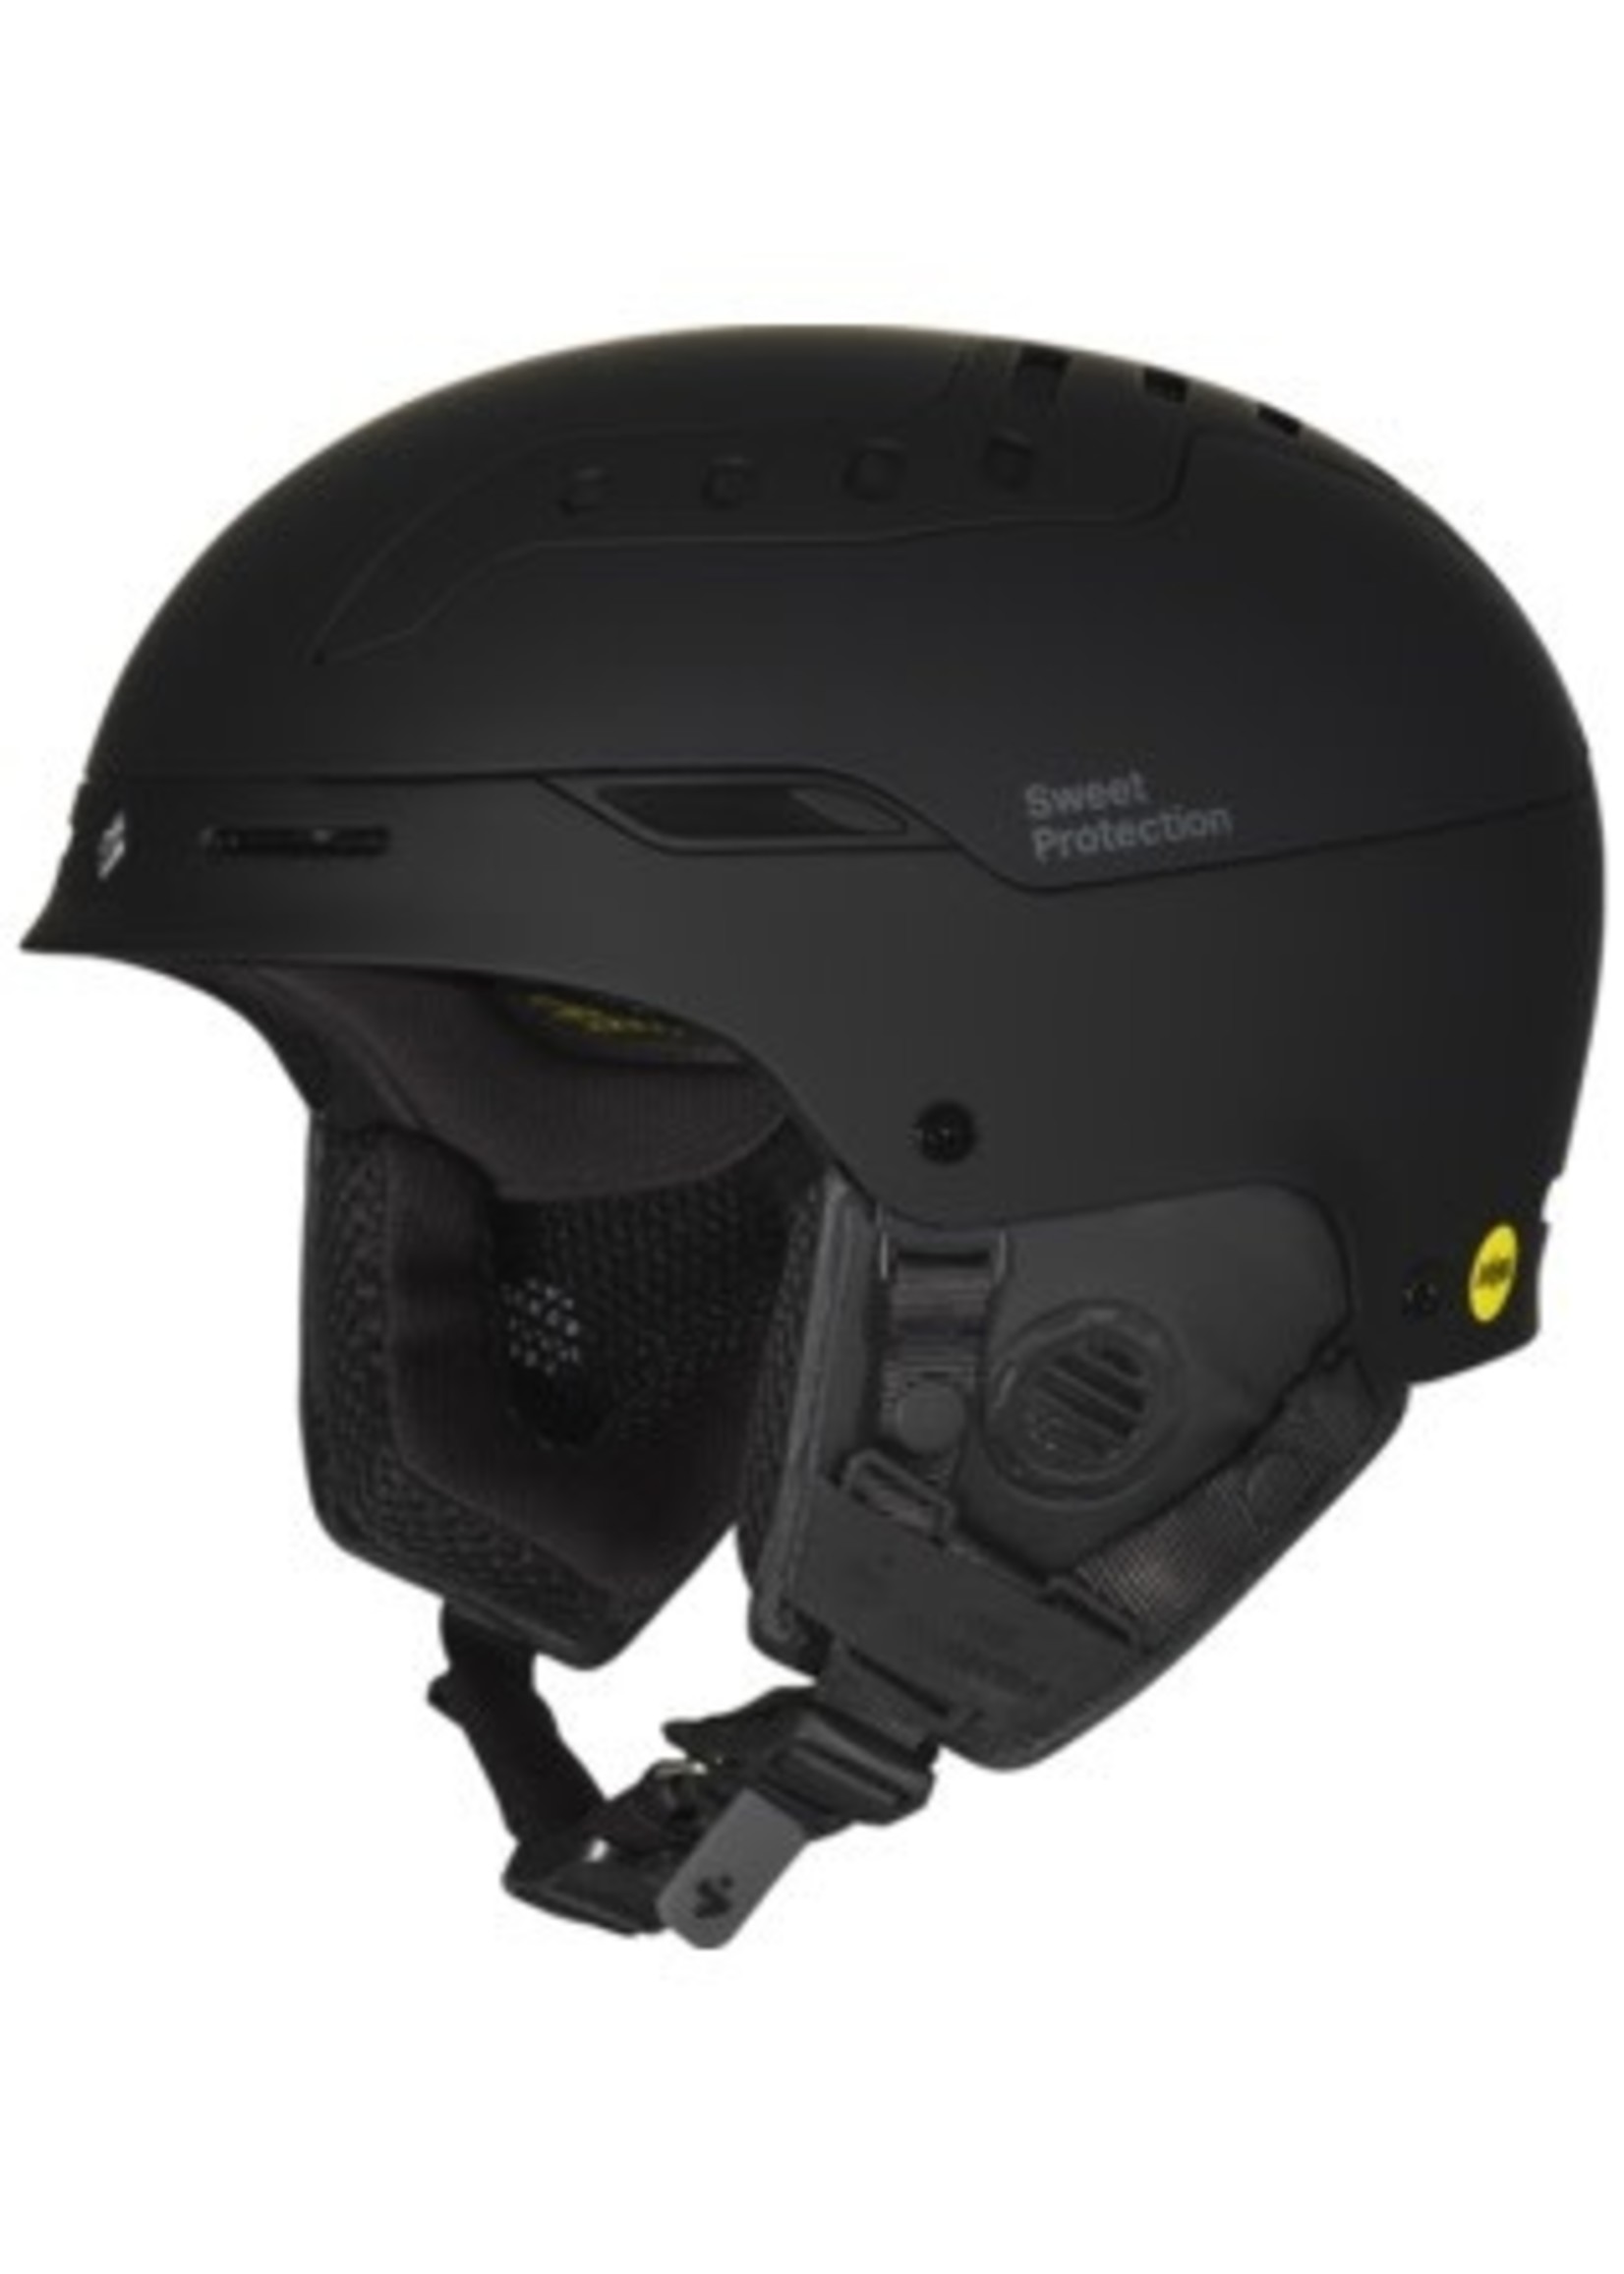 Sweet Protection Helmet Switcher MIPS